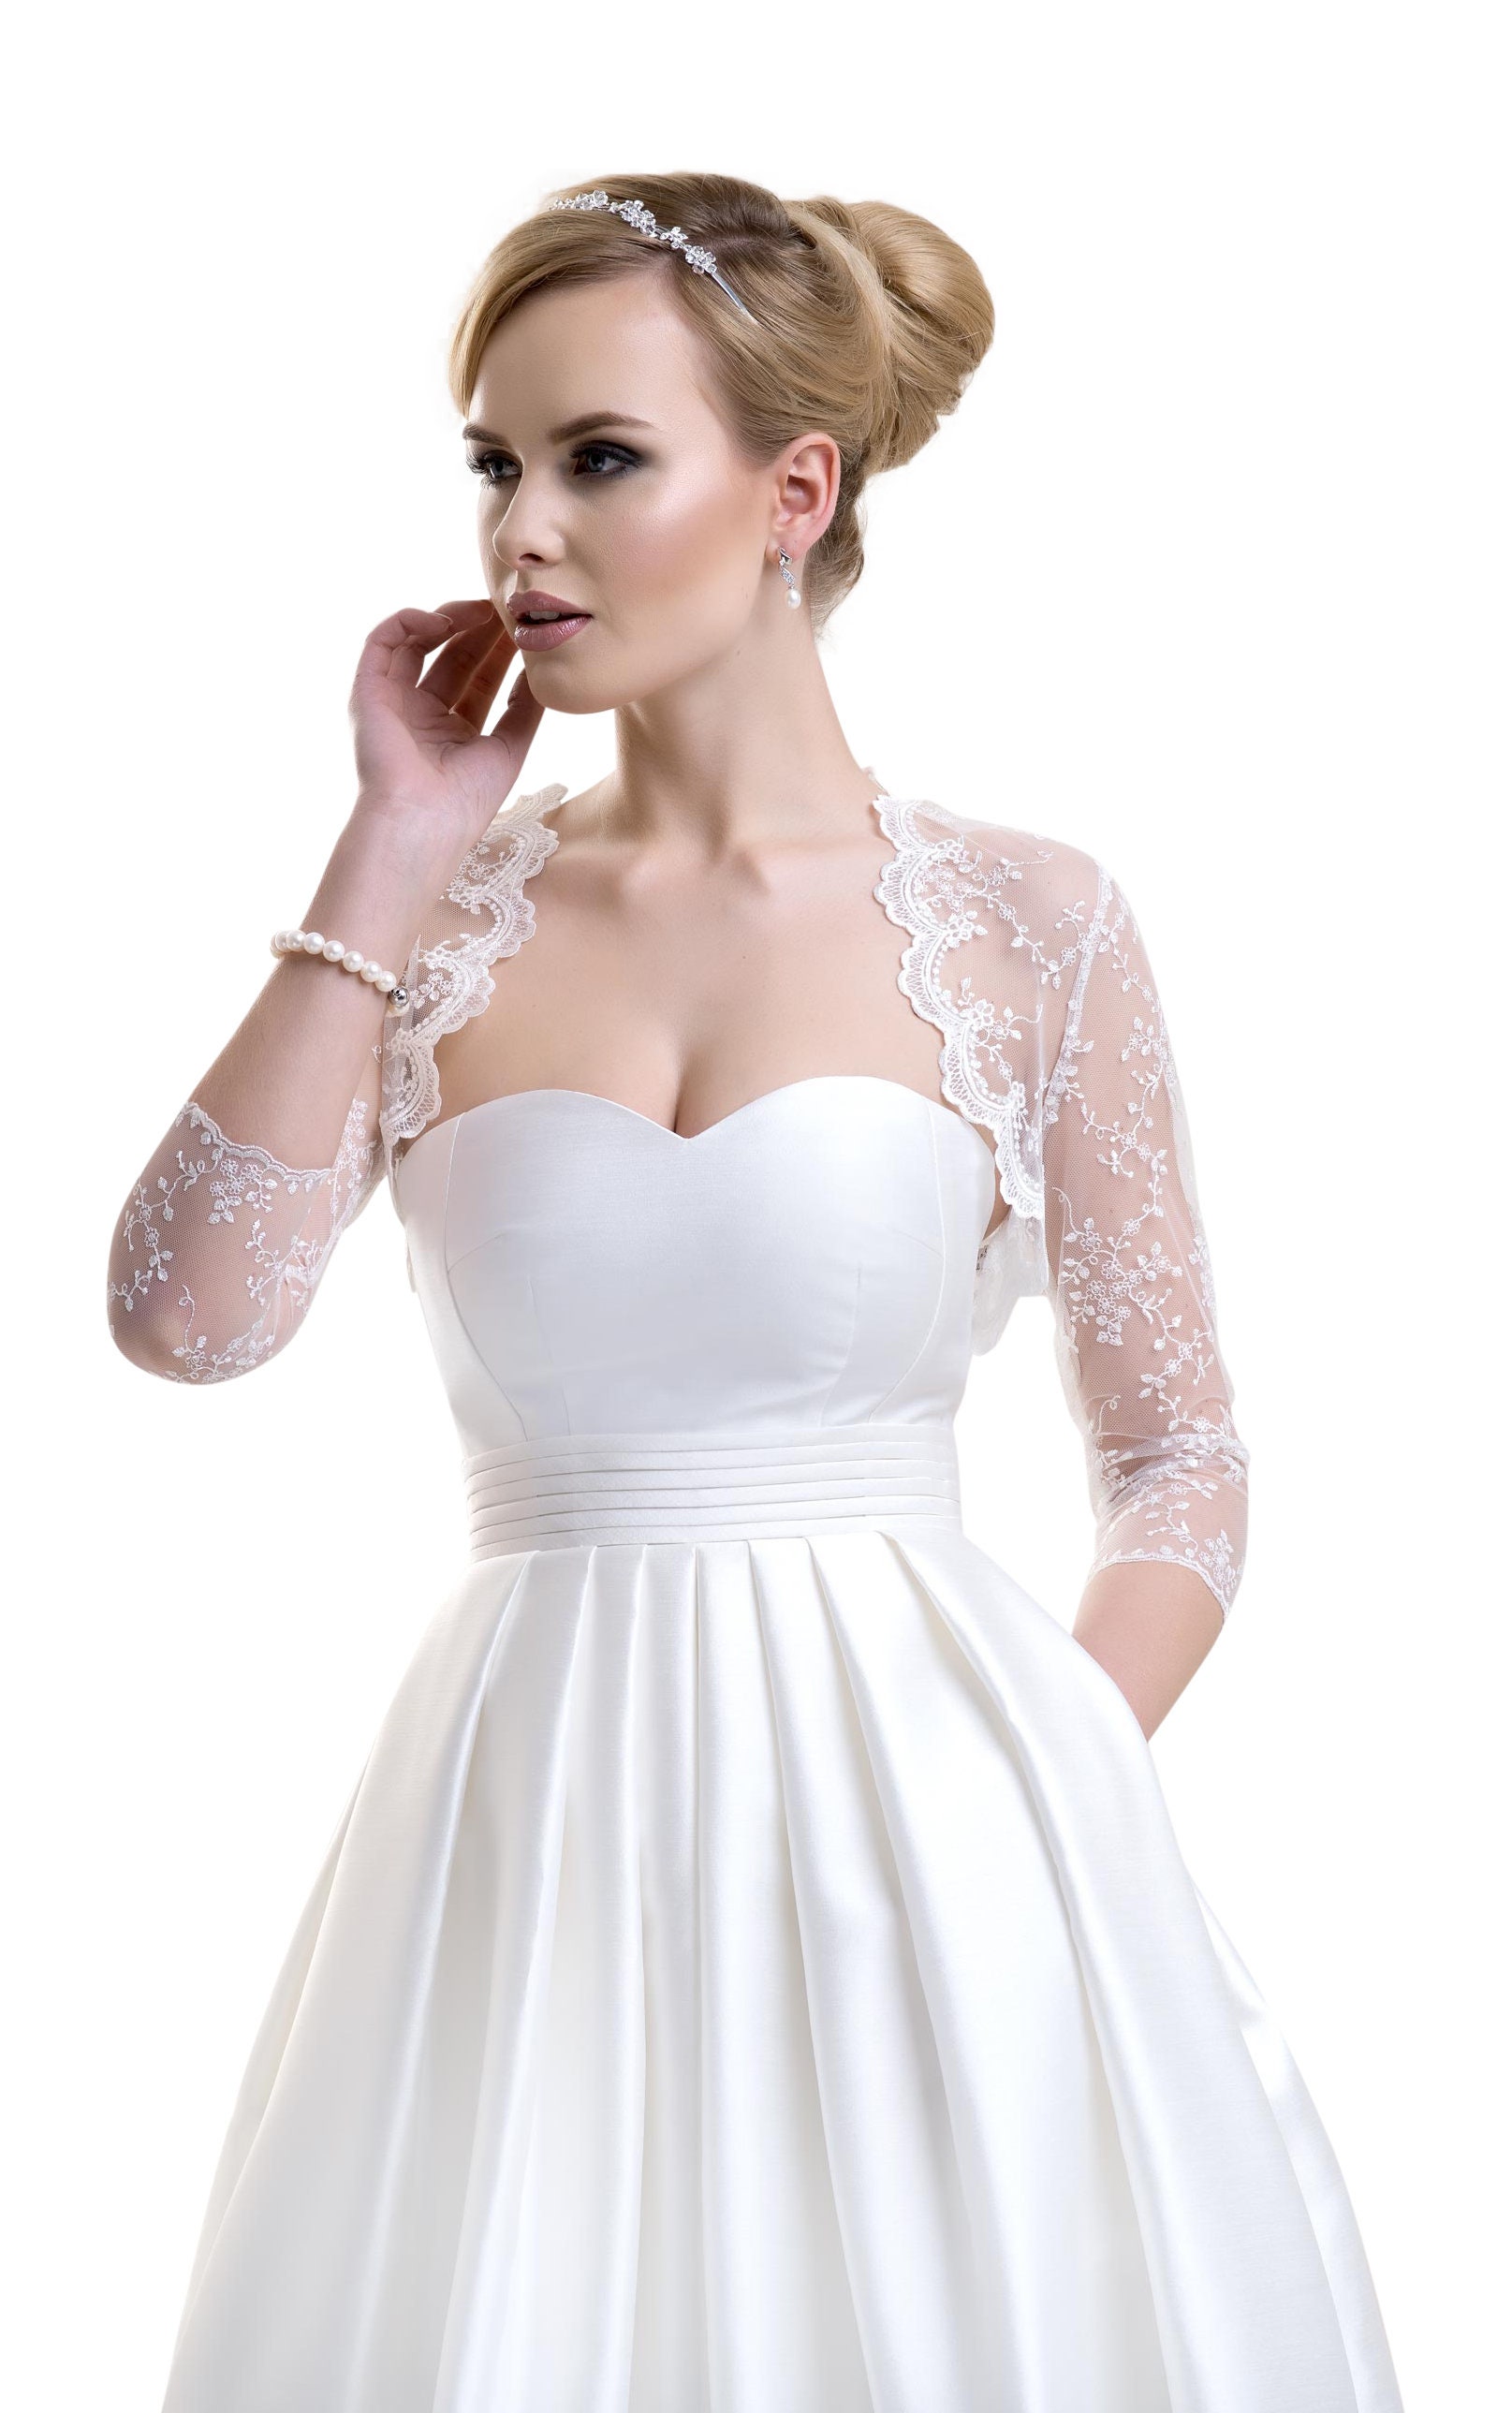 pearl bolero | Modest wedding gowns, Wedding gown styles, Bolero wedding